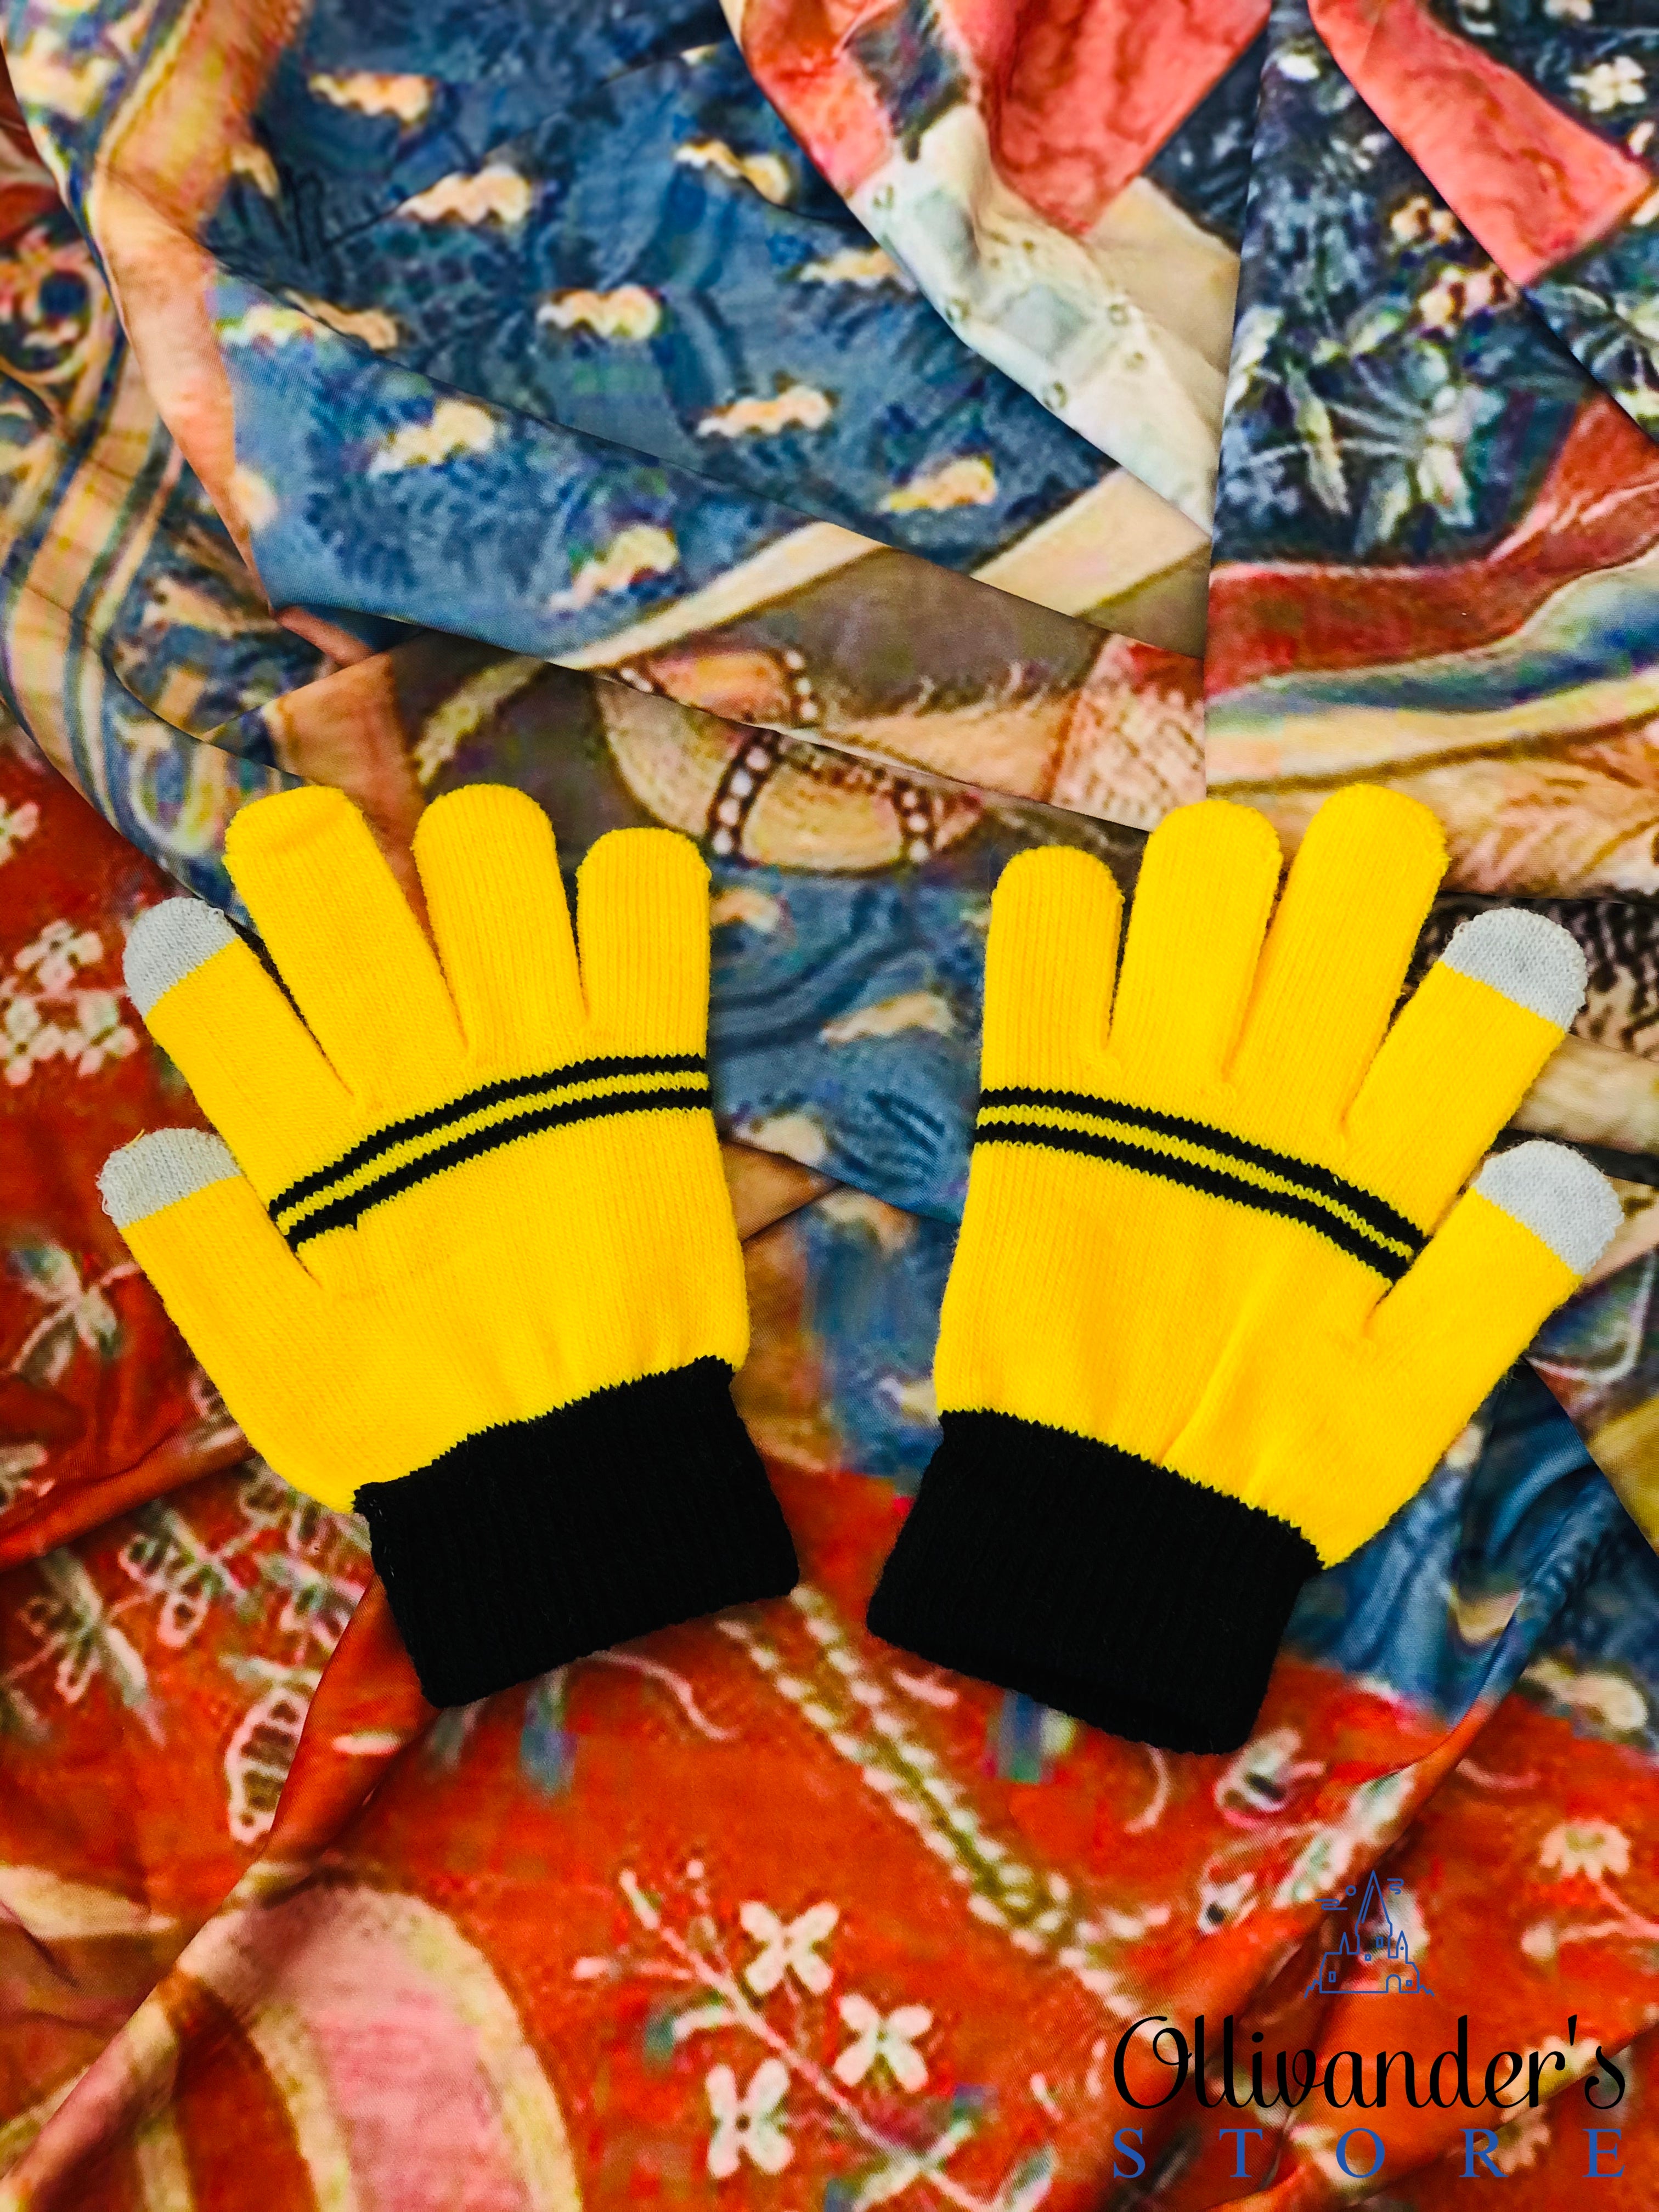 Hufflepuff's glove